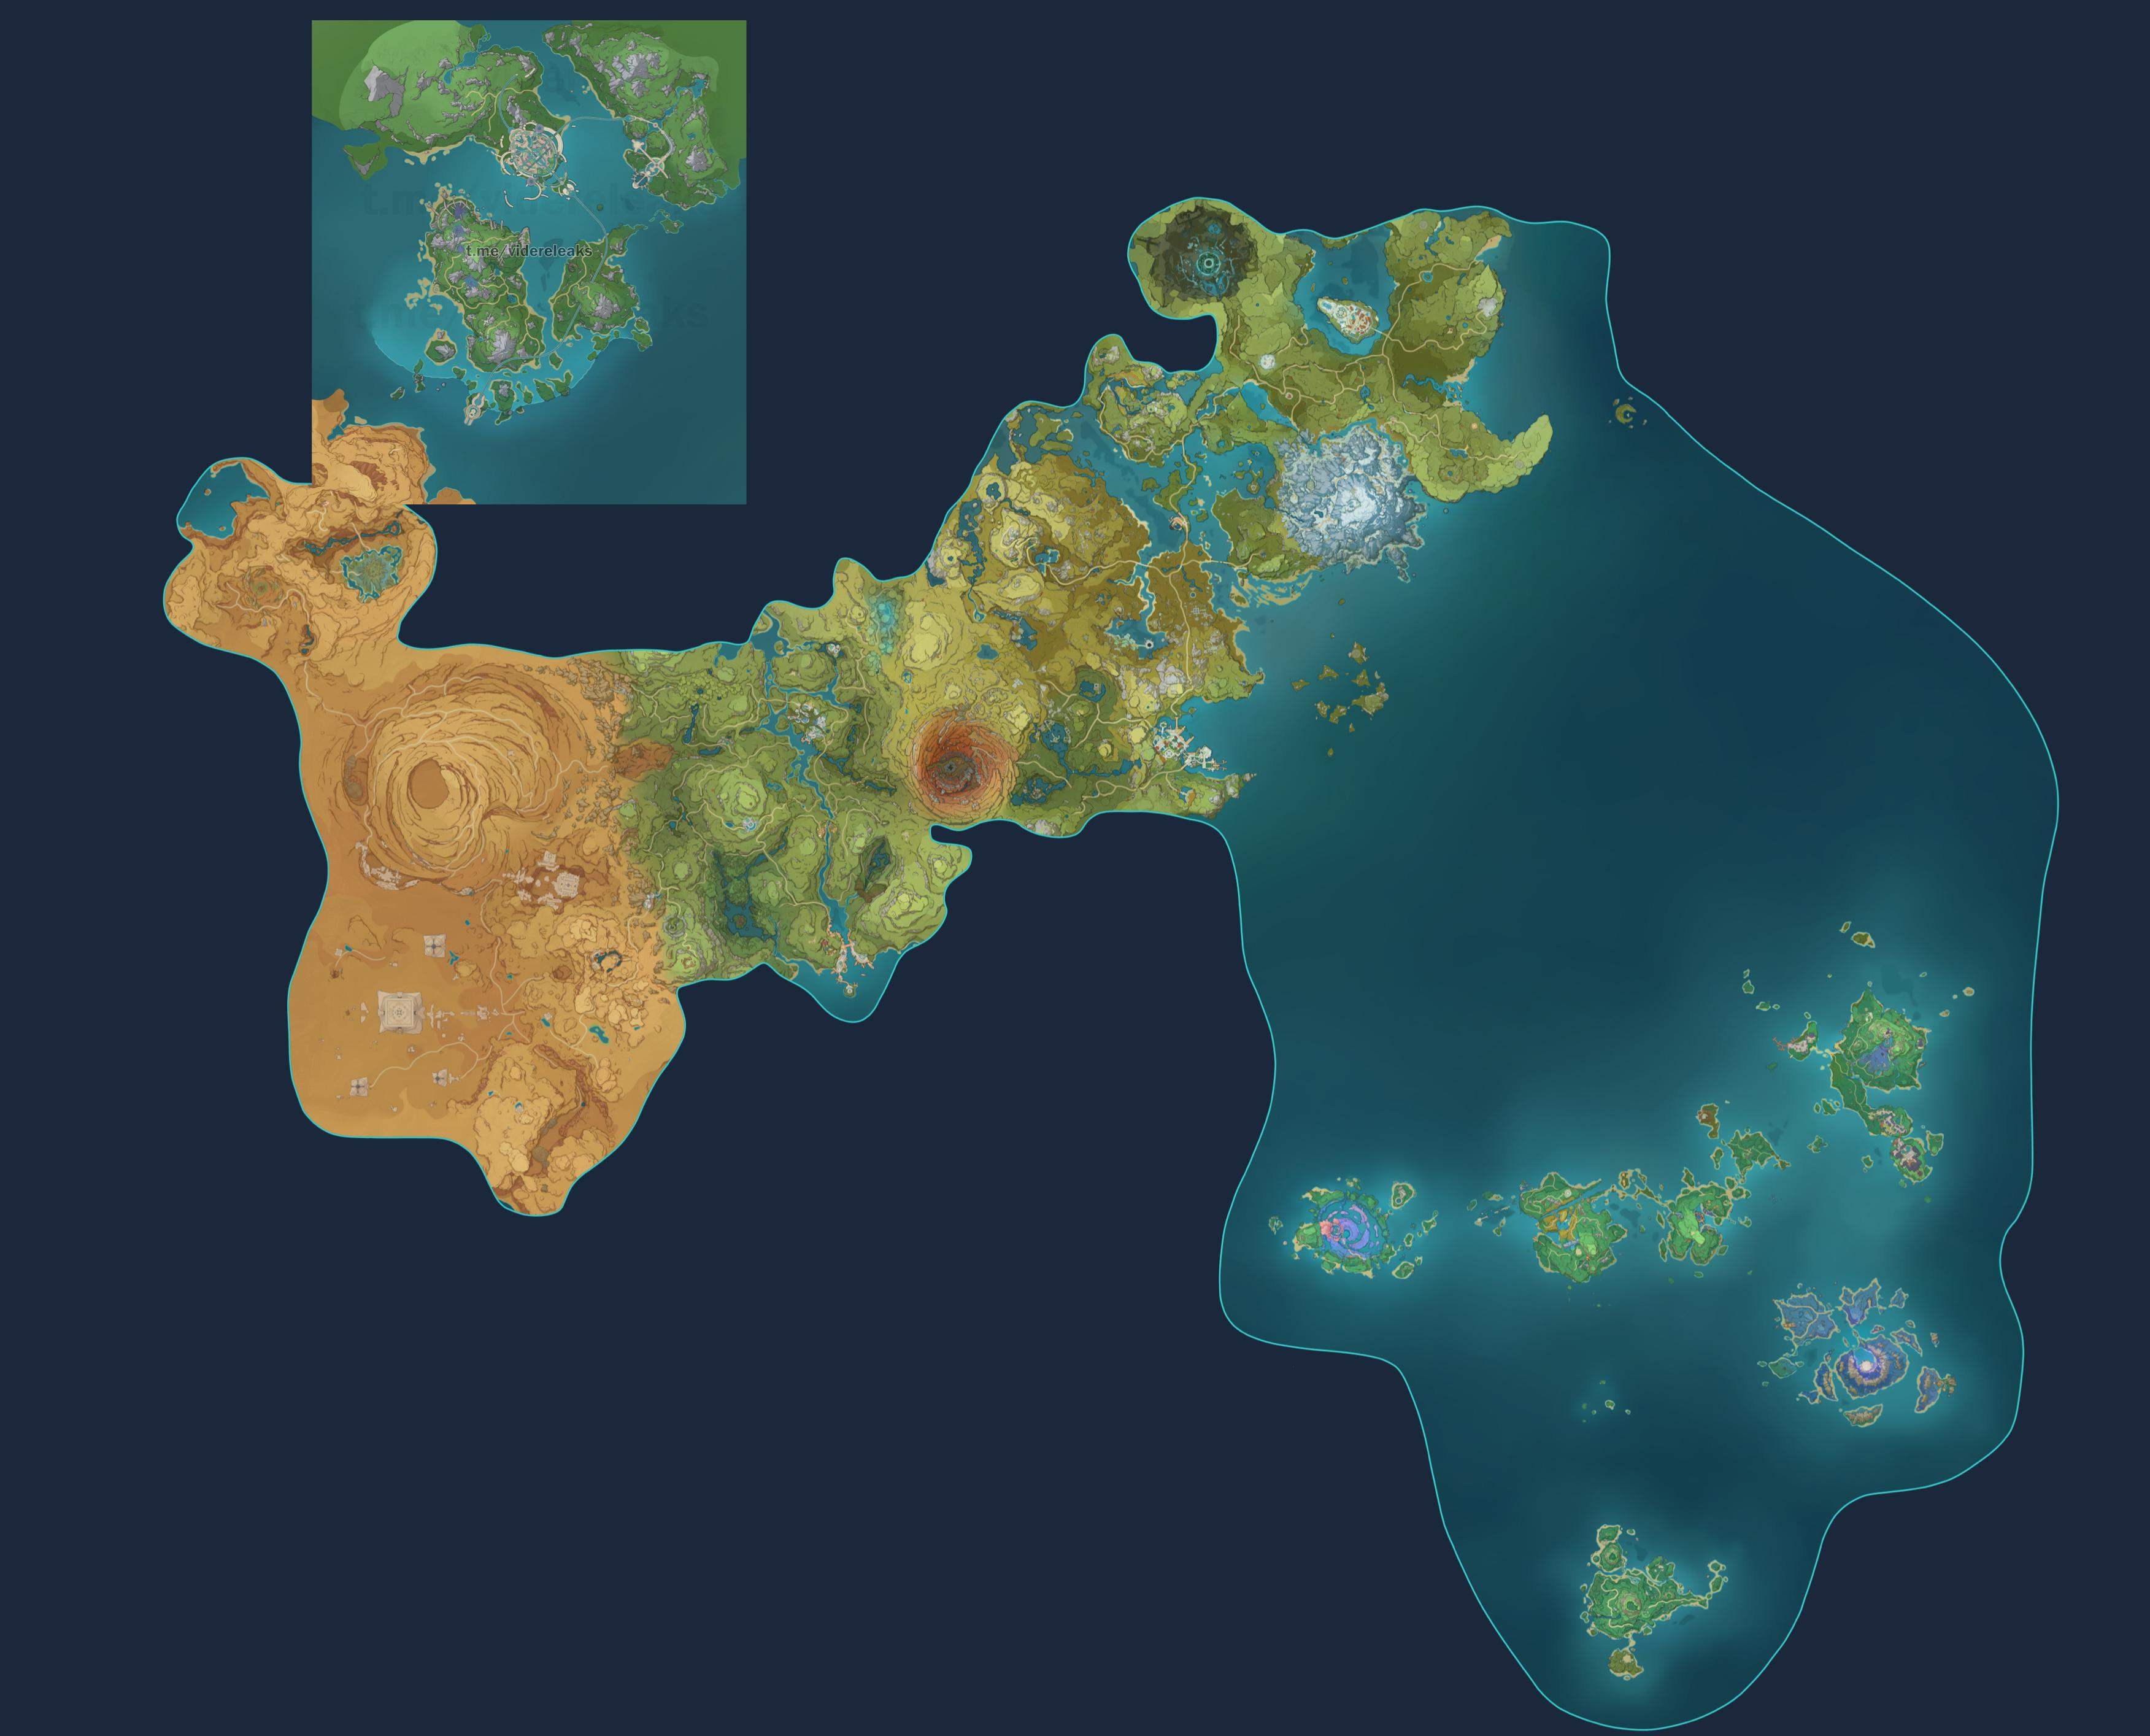 Genshin Impact 4.0: Vazamento revela mapa Fontaine e detalhes de personagens